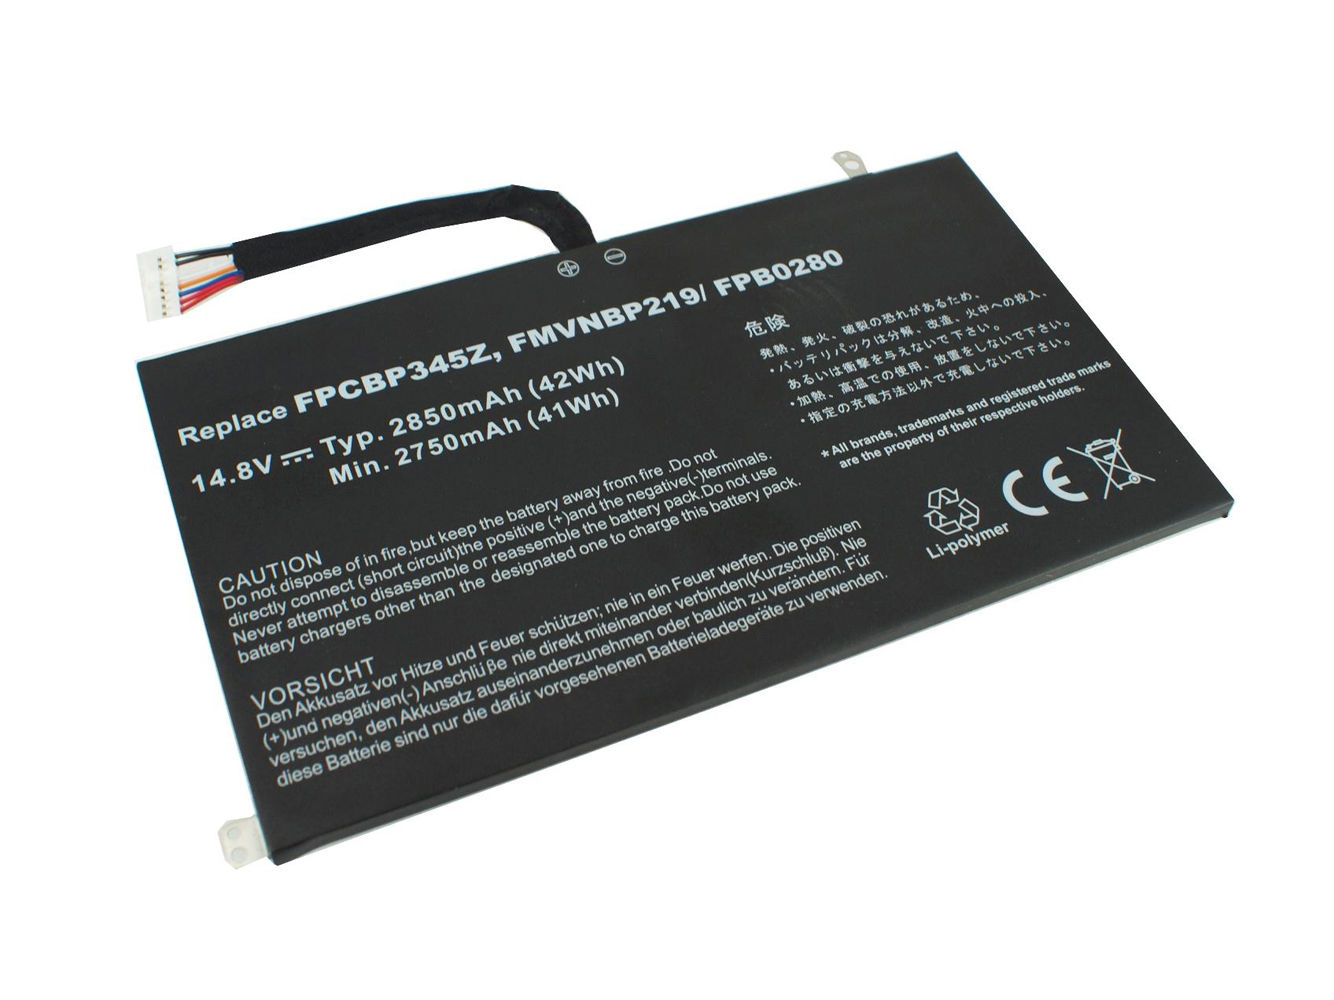 Batería para 2850mAh Fujitsu UH572 FMVNBP219 FPB0280 FPCBP345Z(compatible)